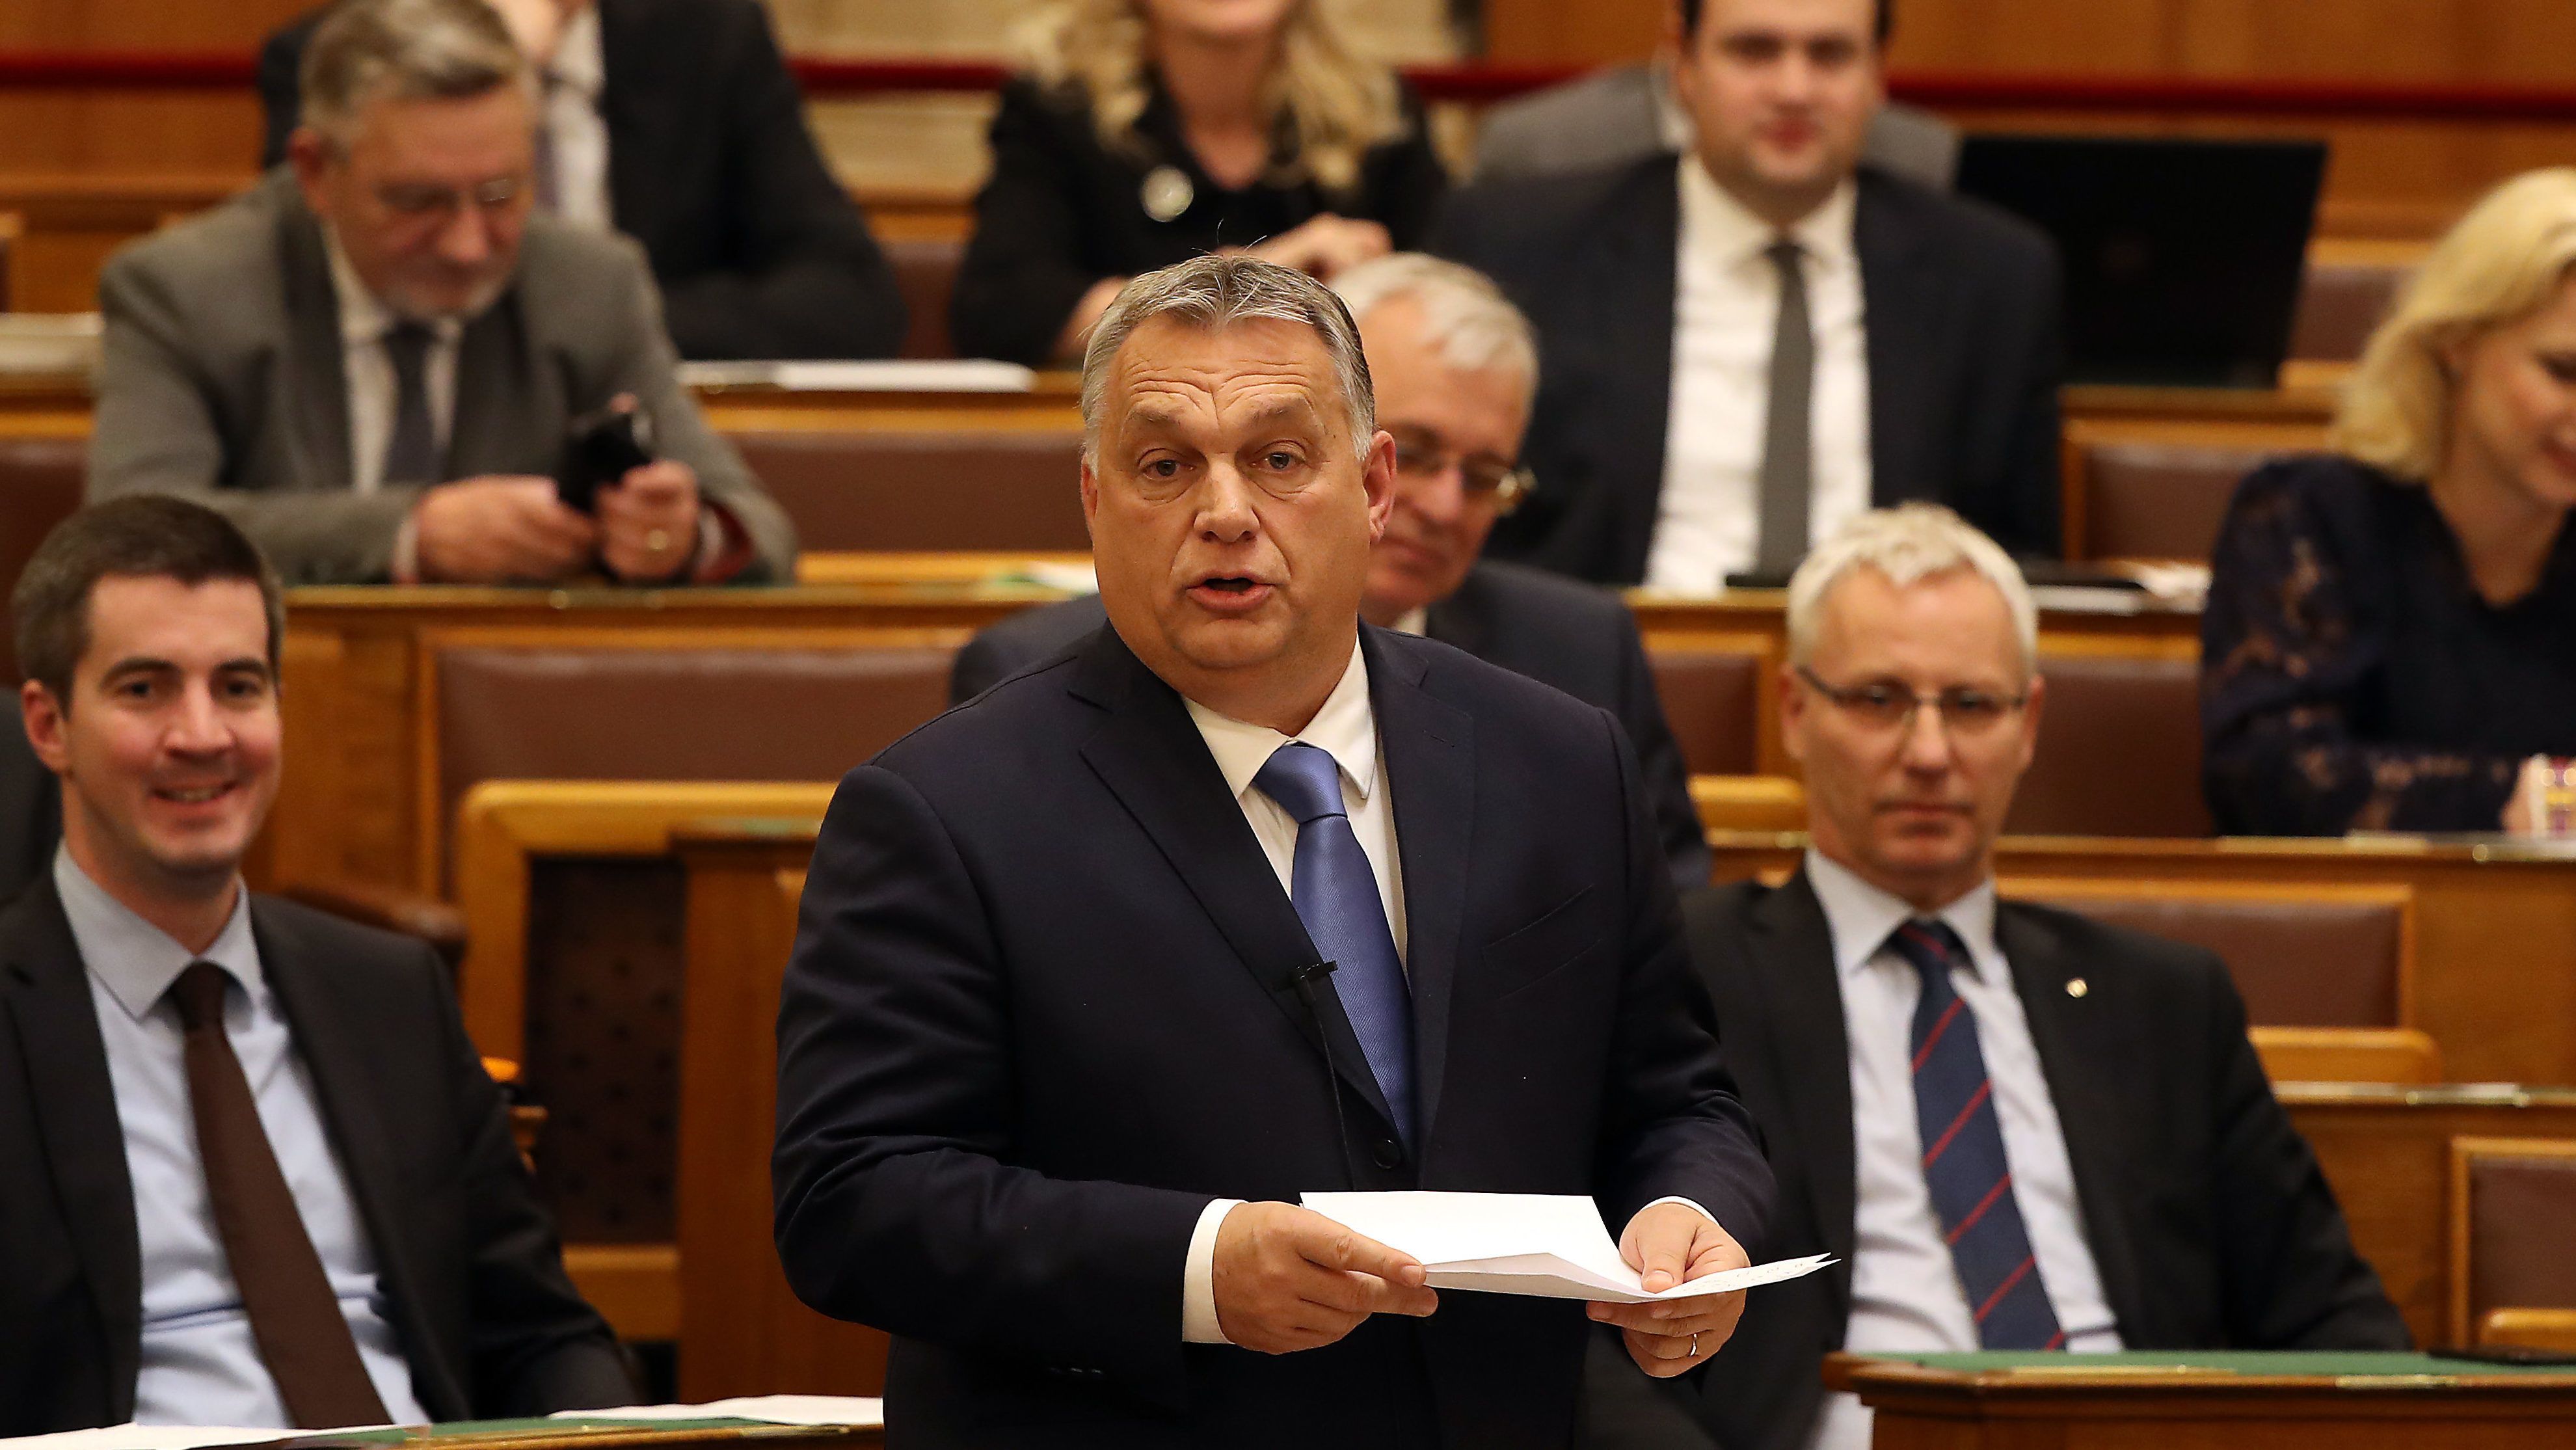 Ezért nem szólalt fel Orbán a parlamentben